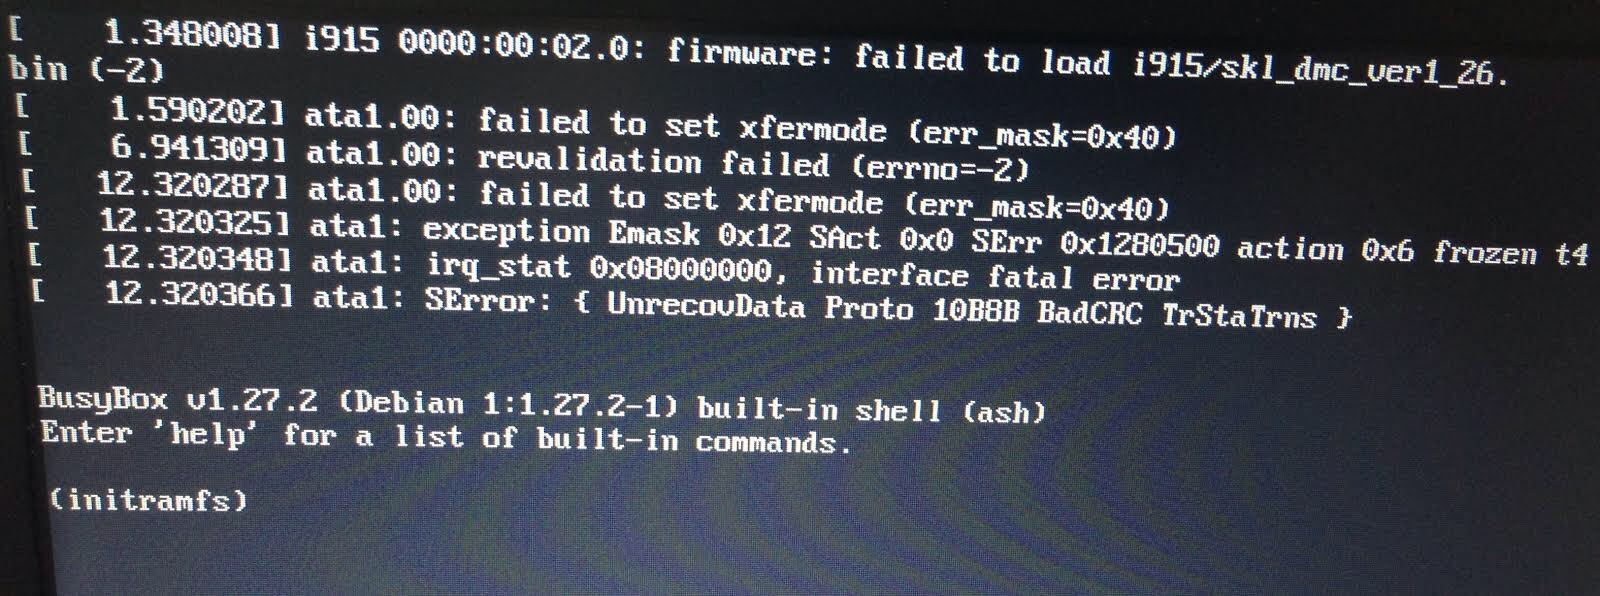 Firmware failed. BUSYBOX V1.30.1. Контейнер BUSYBOX. BUSYBOX V1.30.1 built-in Shell Ash. BUSYBOX V 1.22.1 Ubuntu 1 1.22.0-15ubuntu1 built-in Shell Ash.